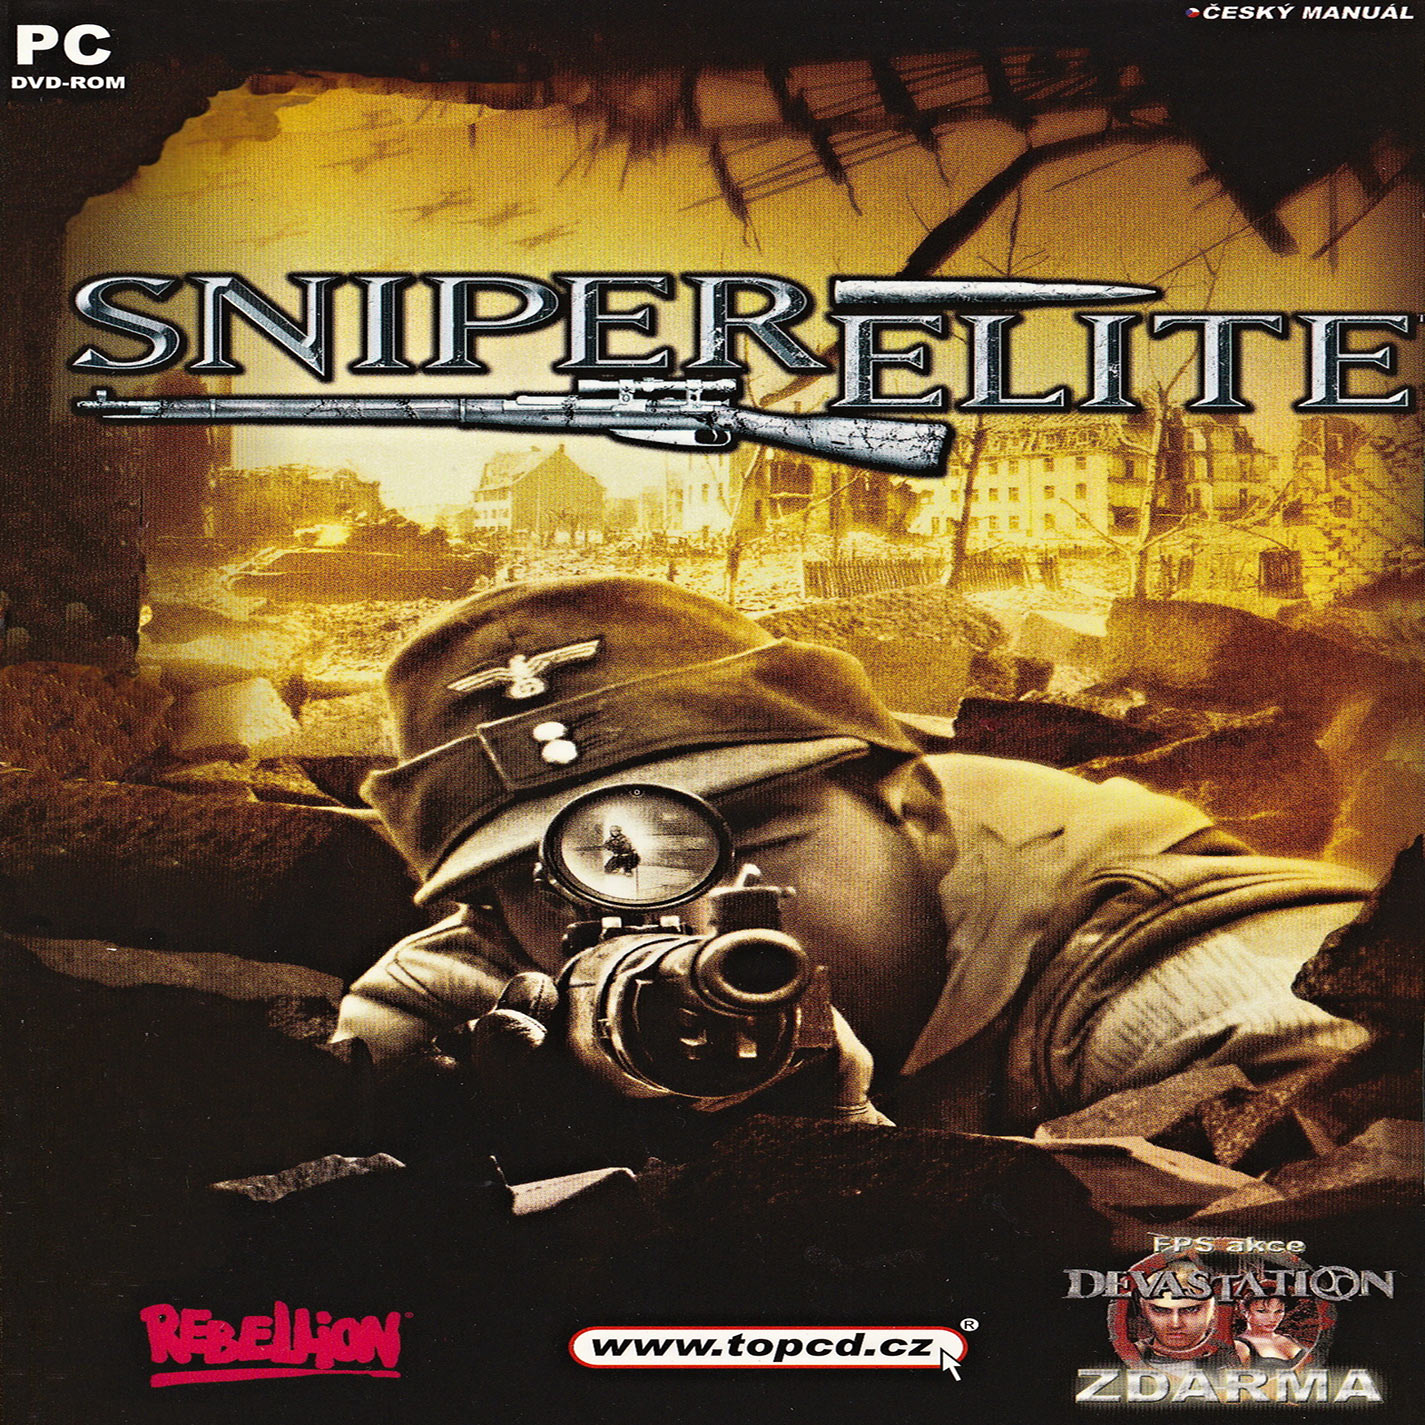 Sniper Elite - pedn CD obal 2